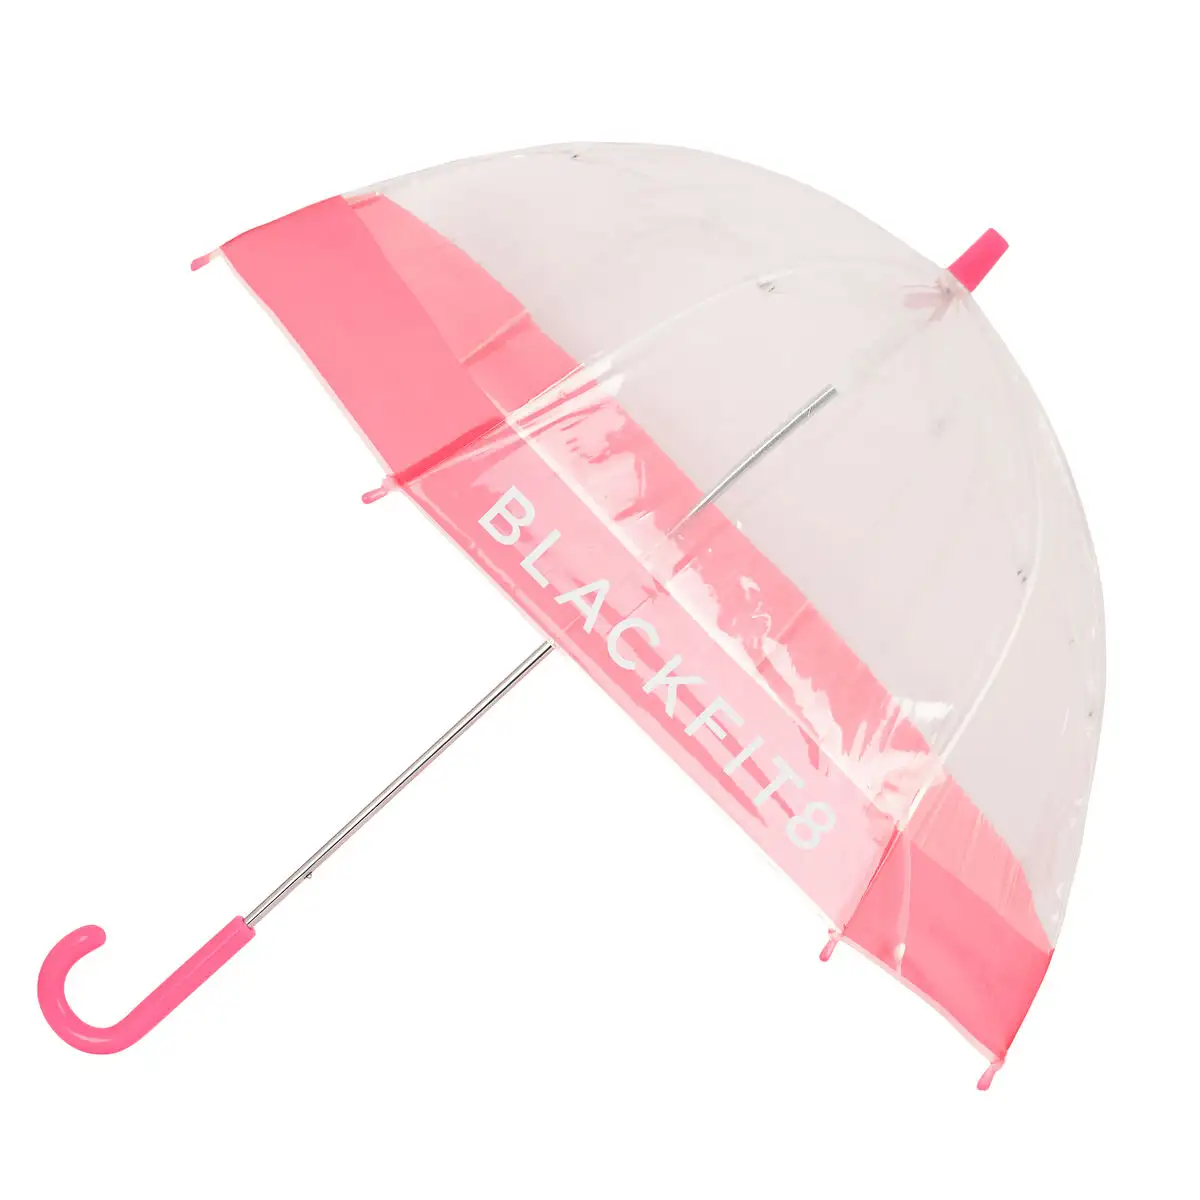 Parapluie blackfit8 glow up transparent rose o 70 cm _1330. DIAYTAR SENEGAL - Votre Source de Trouvailles uniques. Naviguez à travers notre catalogue et trouvez des articles qui vous distinguent et reflètent votre unicité.